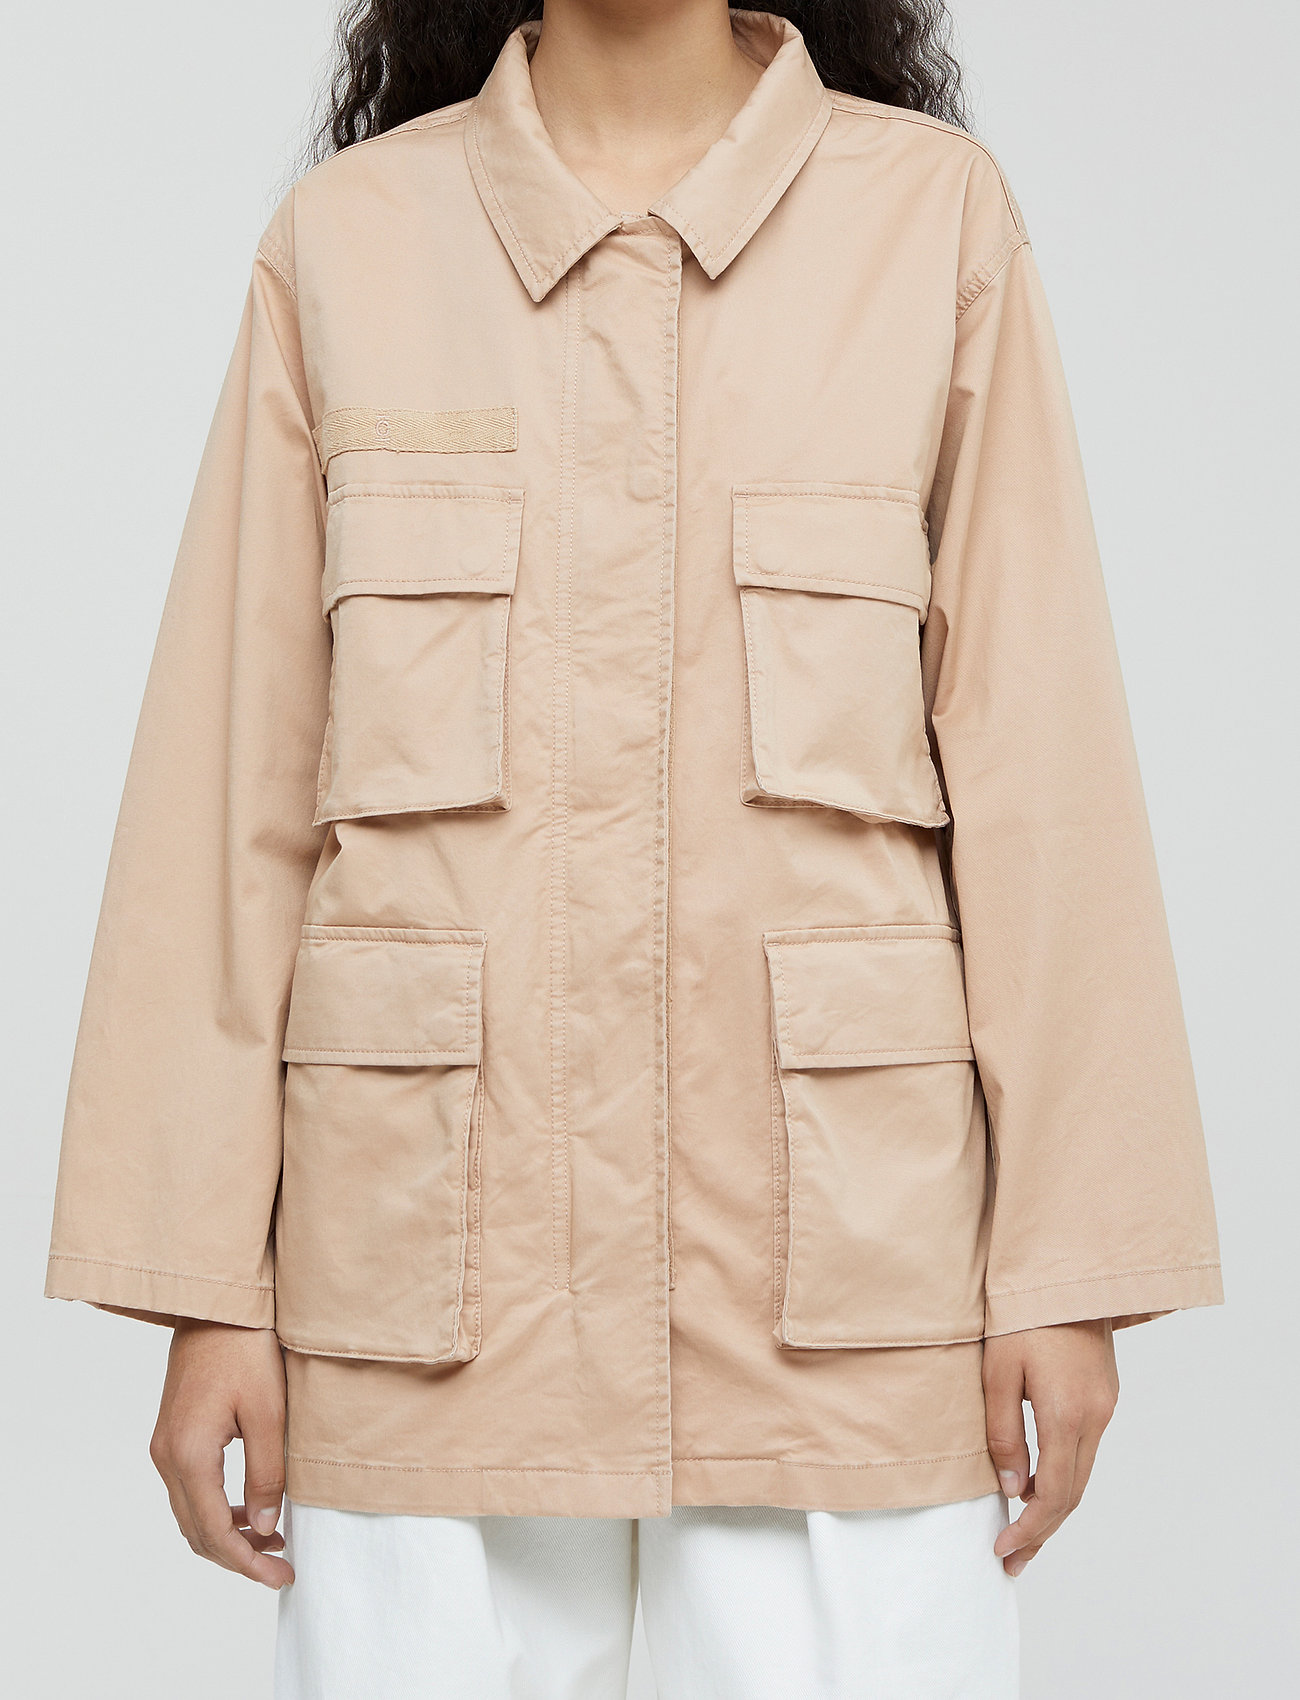 Closed - womens jacket - manteaux legères - sandstone - 0